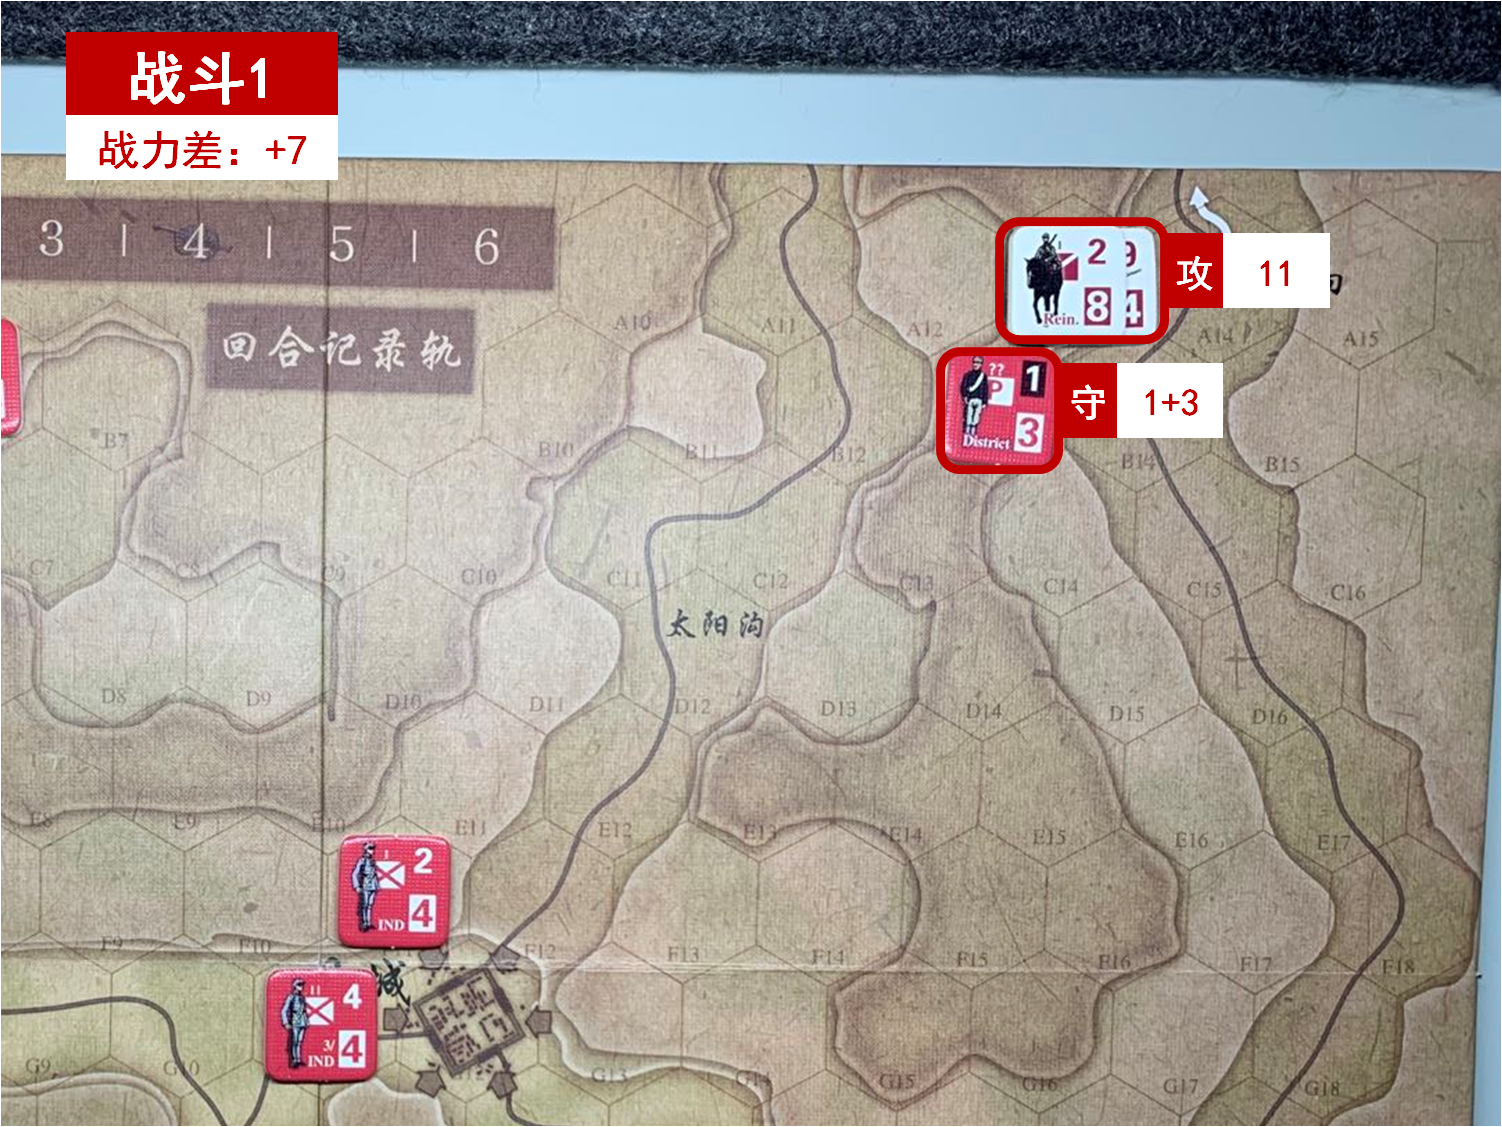 第二回合 日方戰鬥階段 戰鬥1 戰鬥力差值